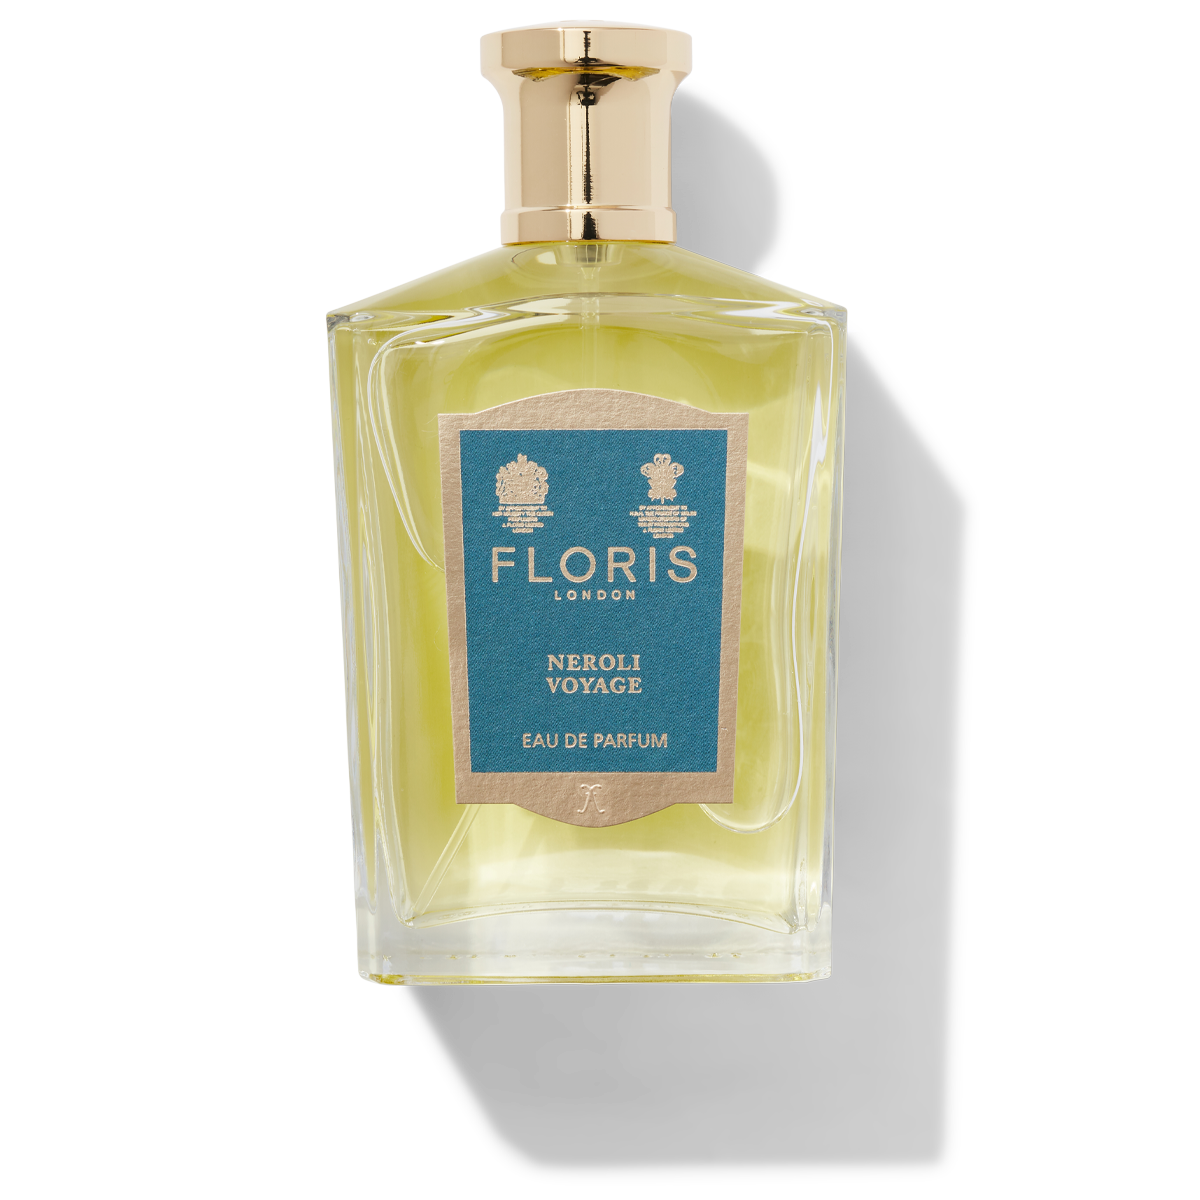 Floris London Neroli Voyage Eau de Parfum glass bottle